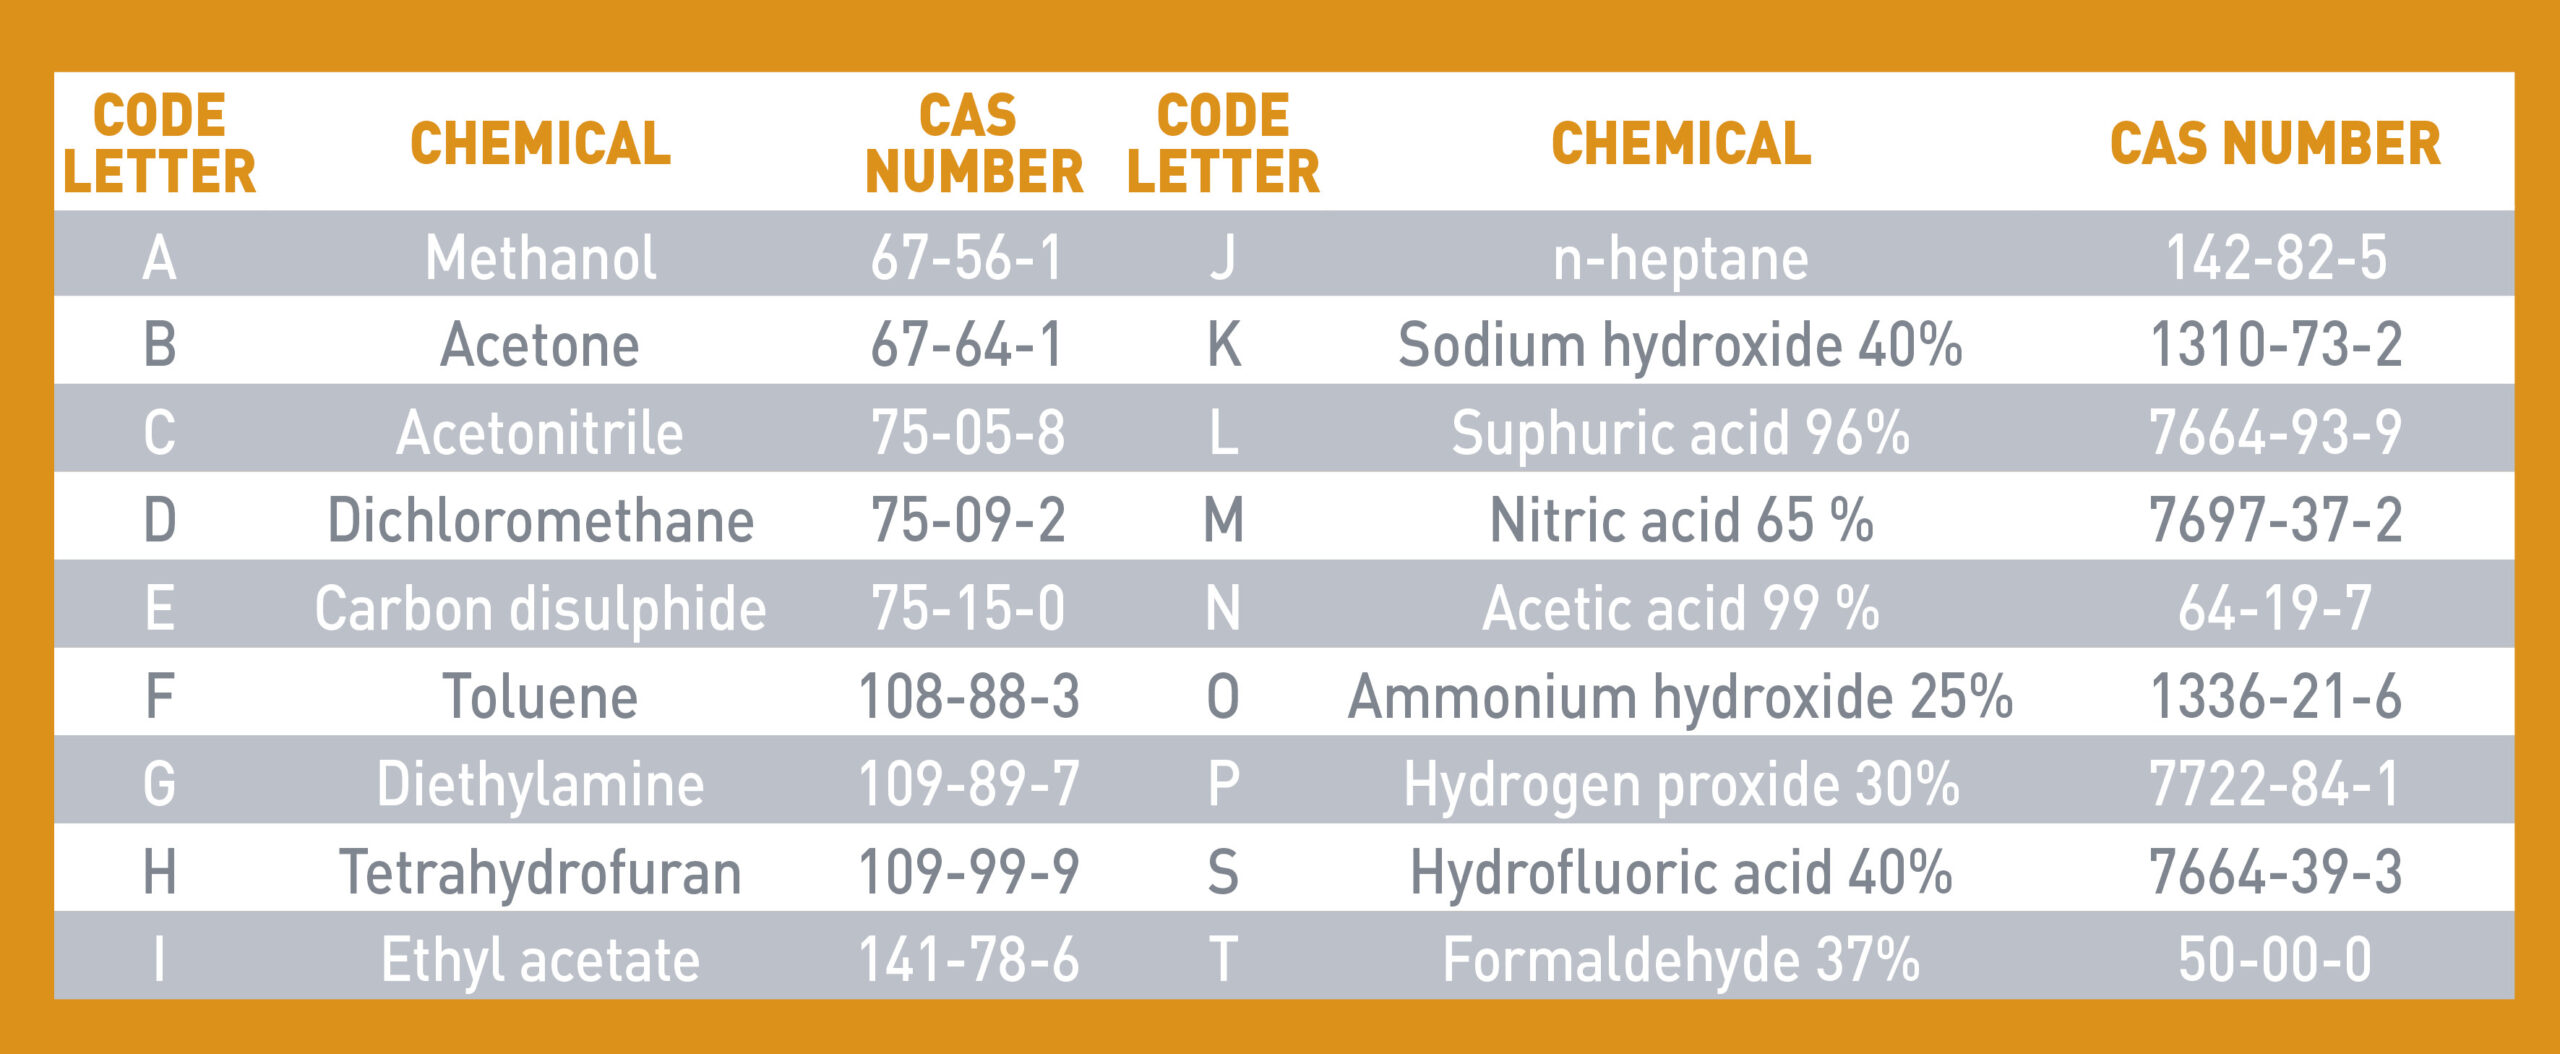 Tabelle der ISO 374-1:2016+A1:2018 18 Chemikalien- und Kennbuchstabenliste 